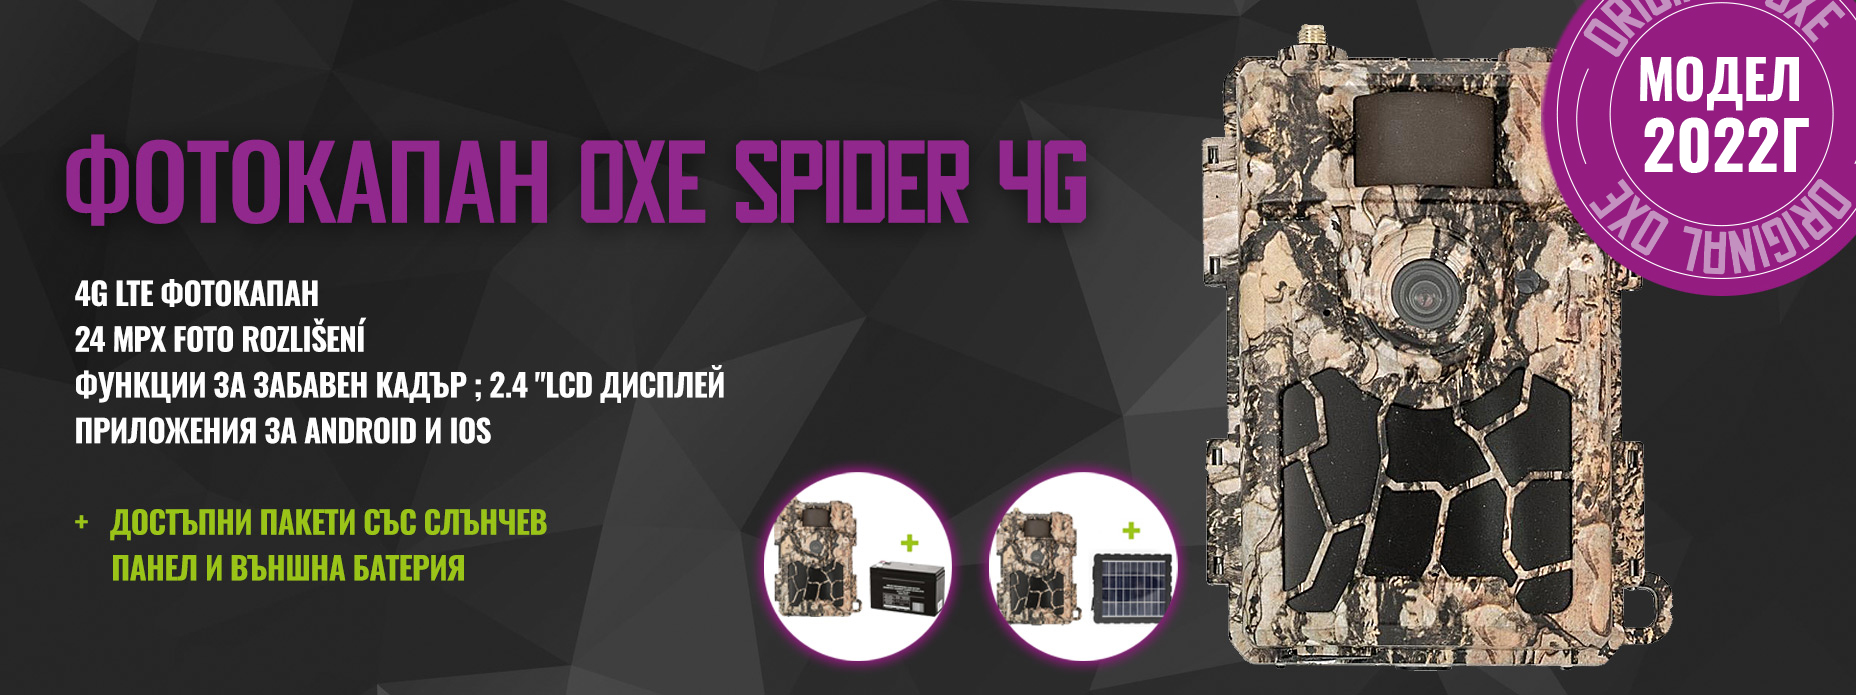 OXE Spider 4G